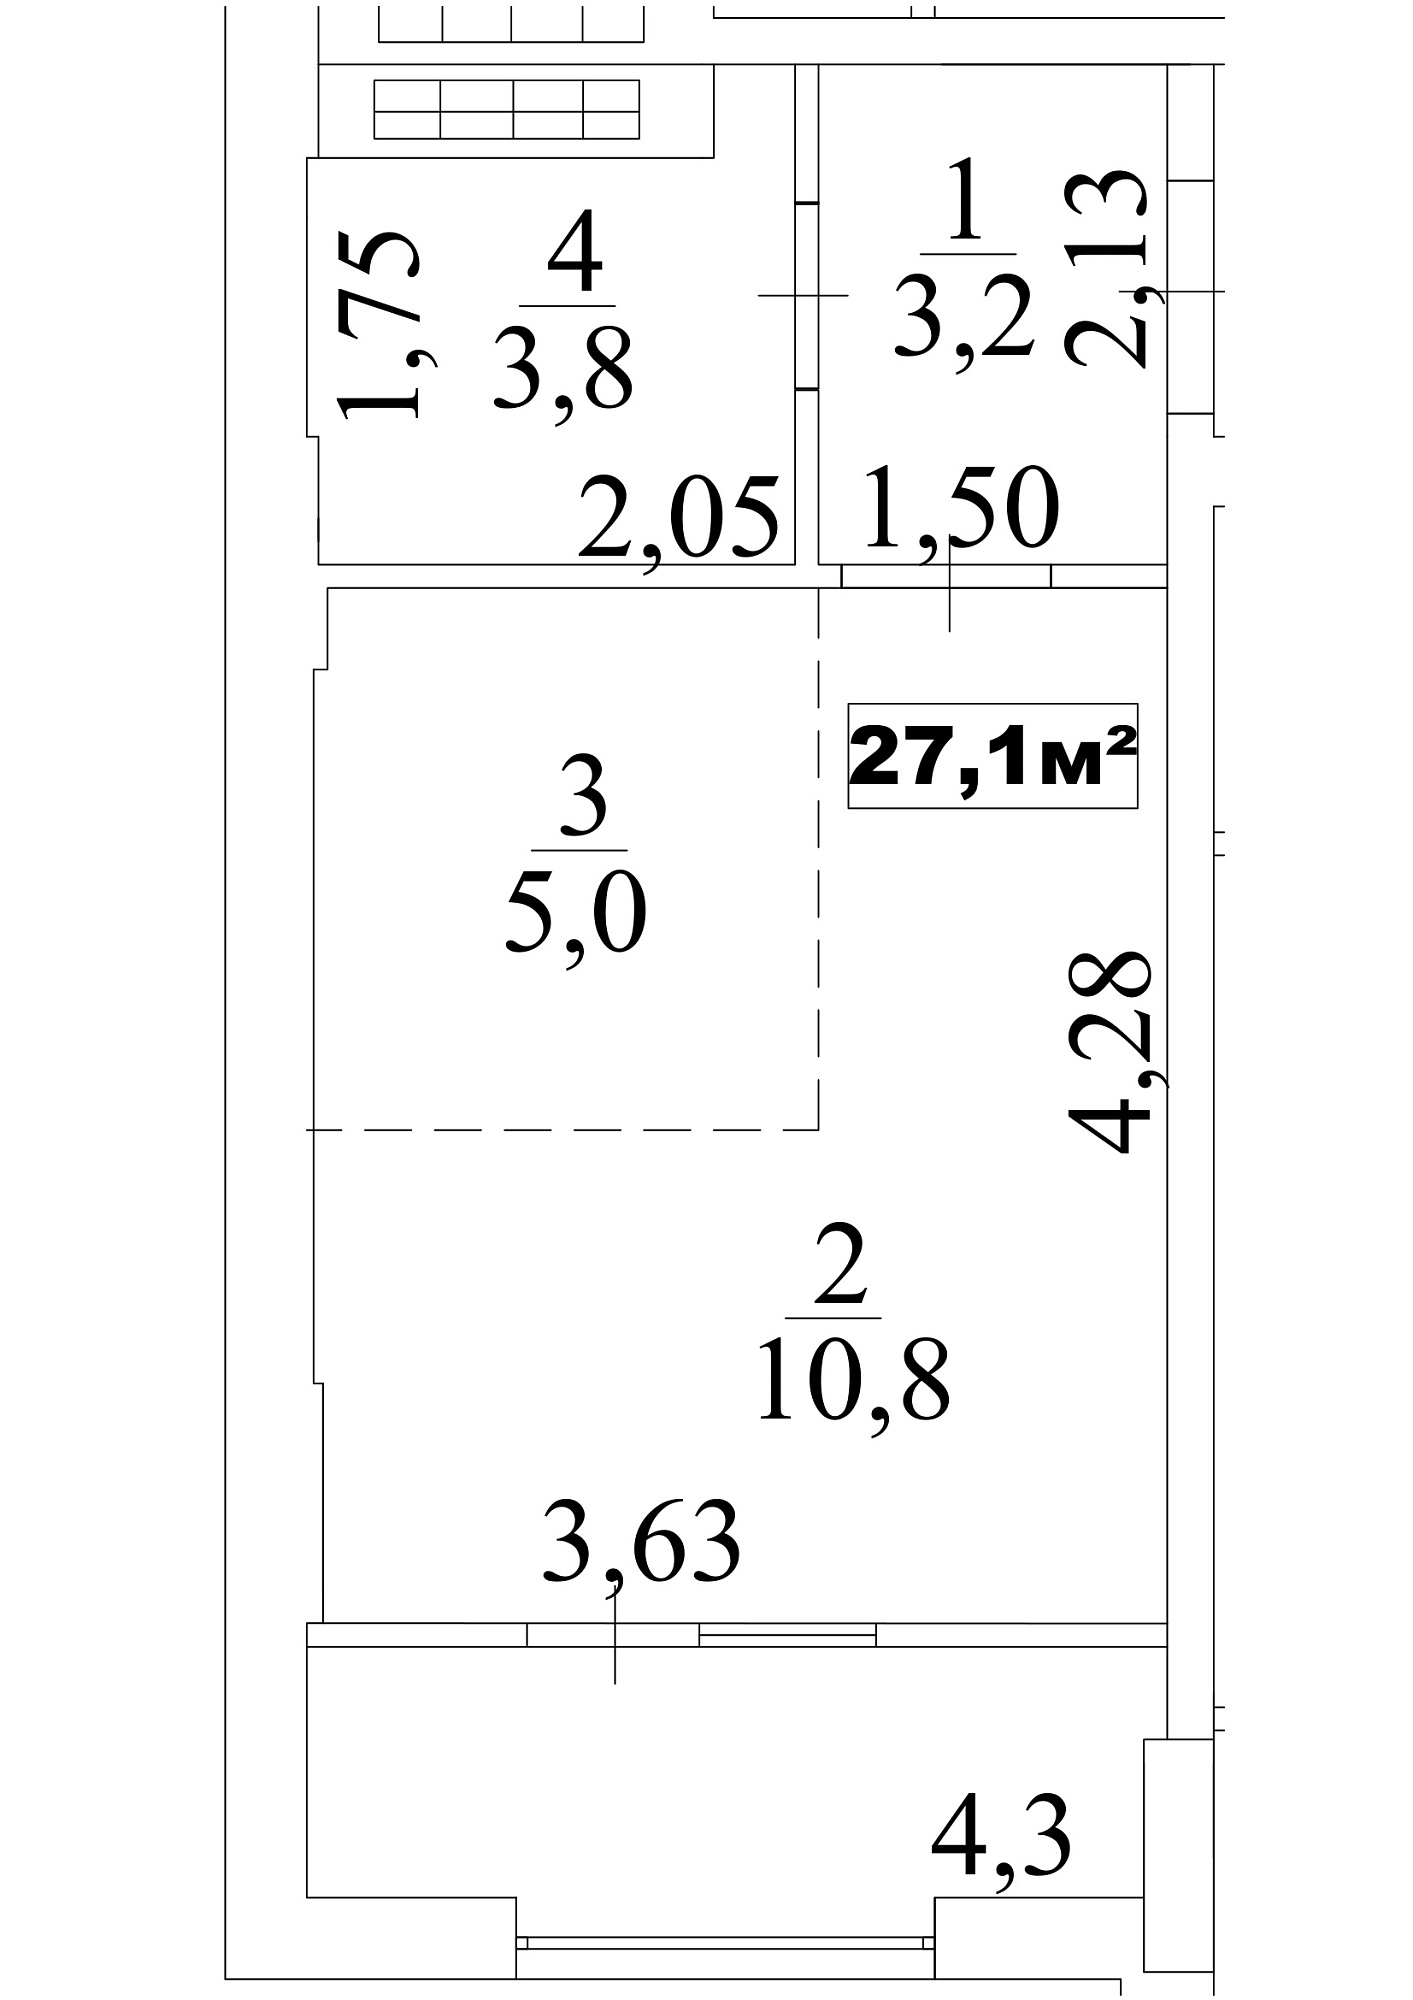 Планування Smart-квартира площею 27.1м2, AB-10-06/0048а.